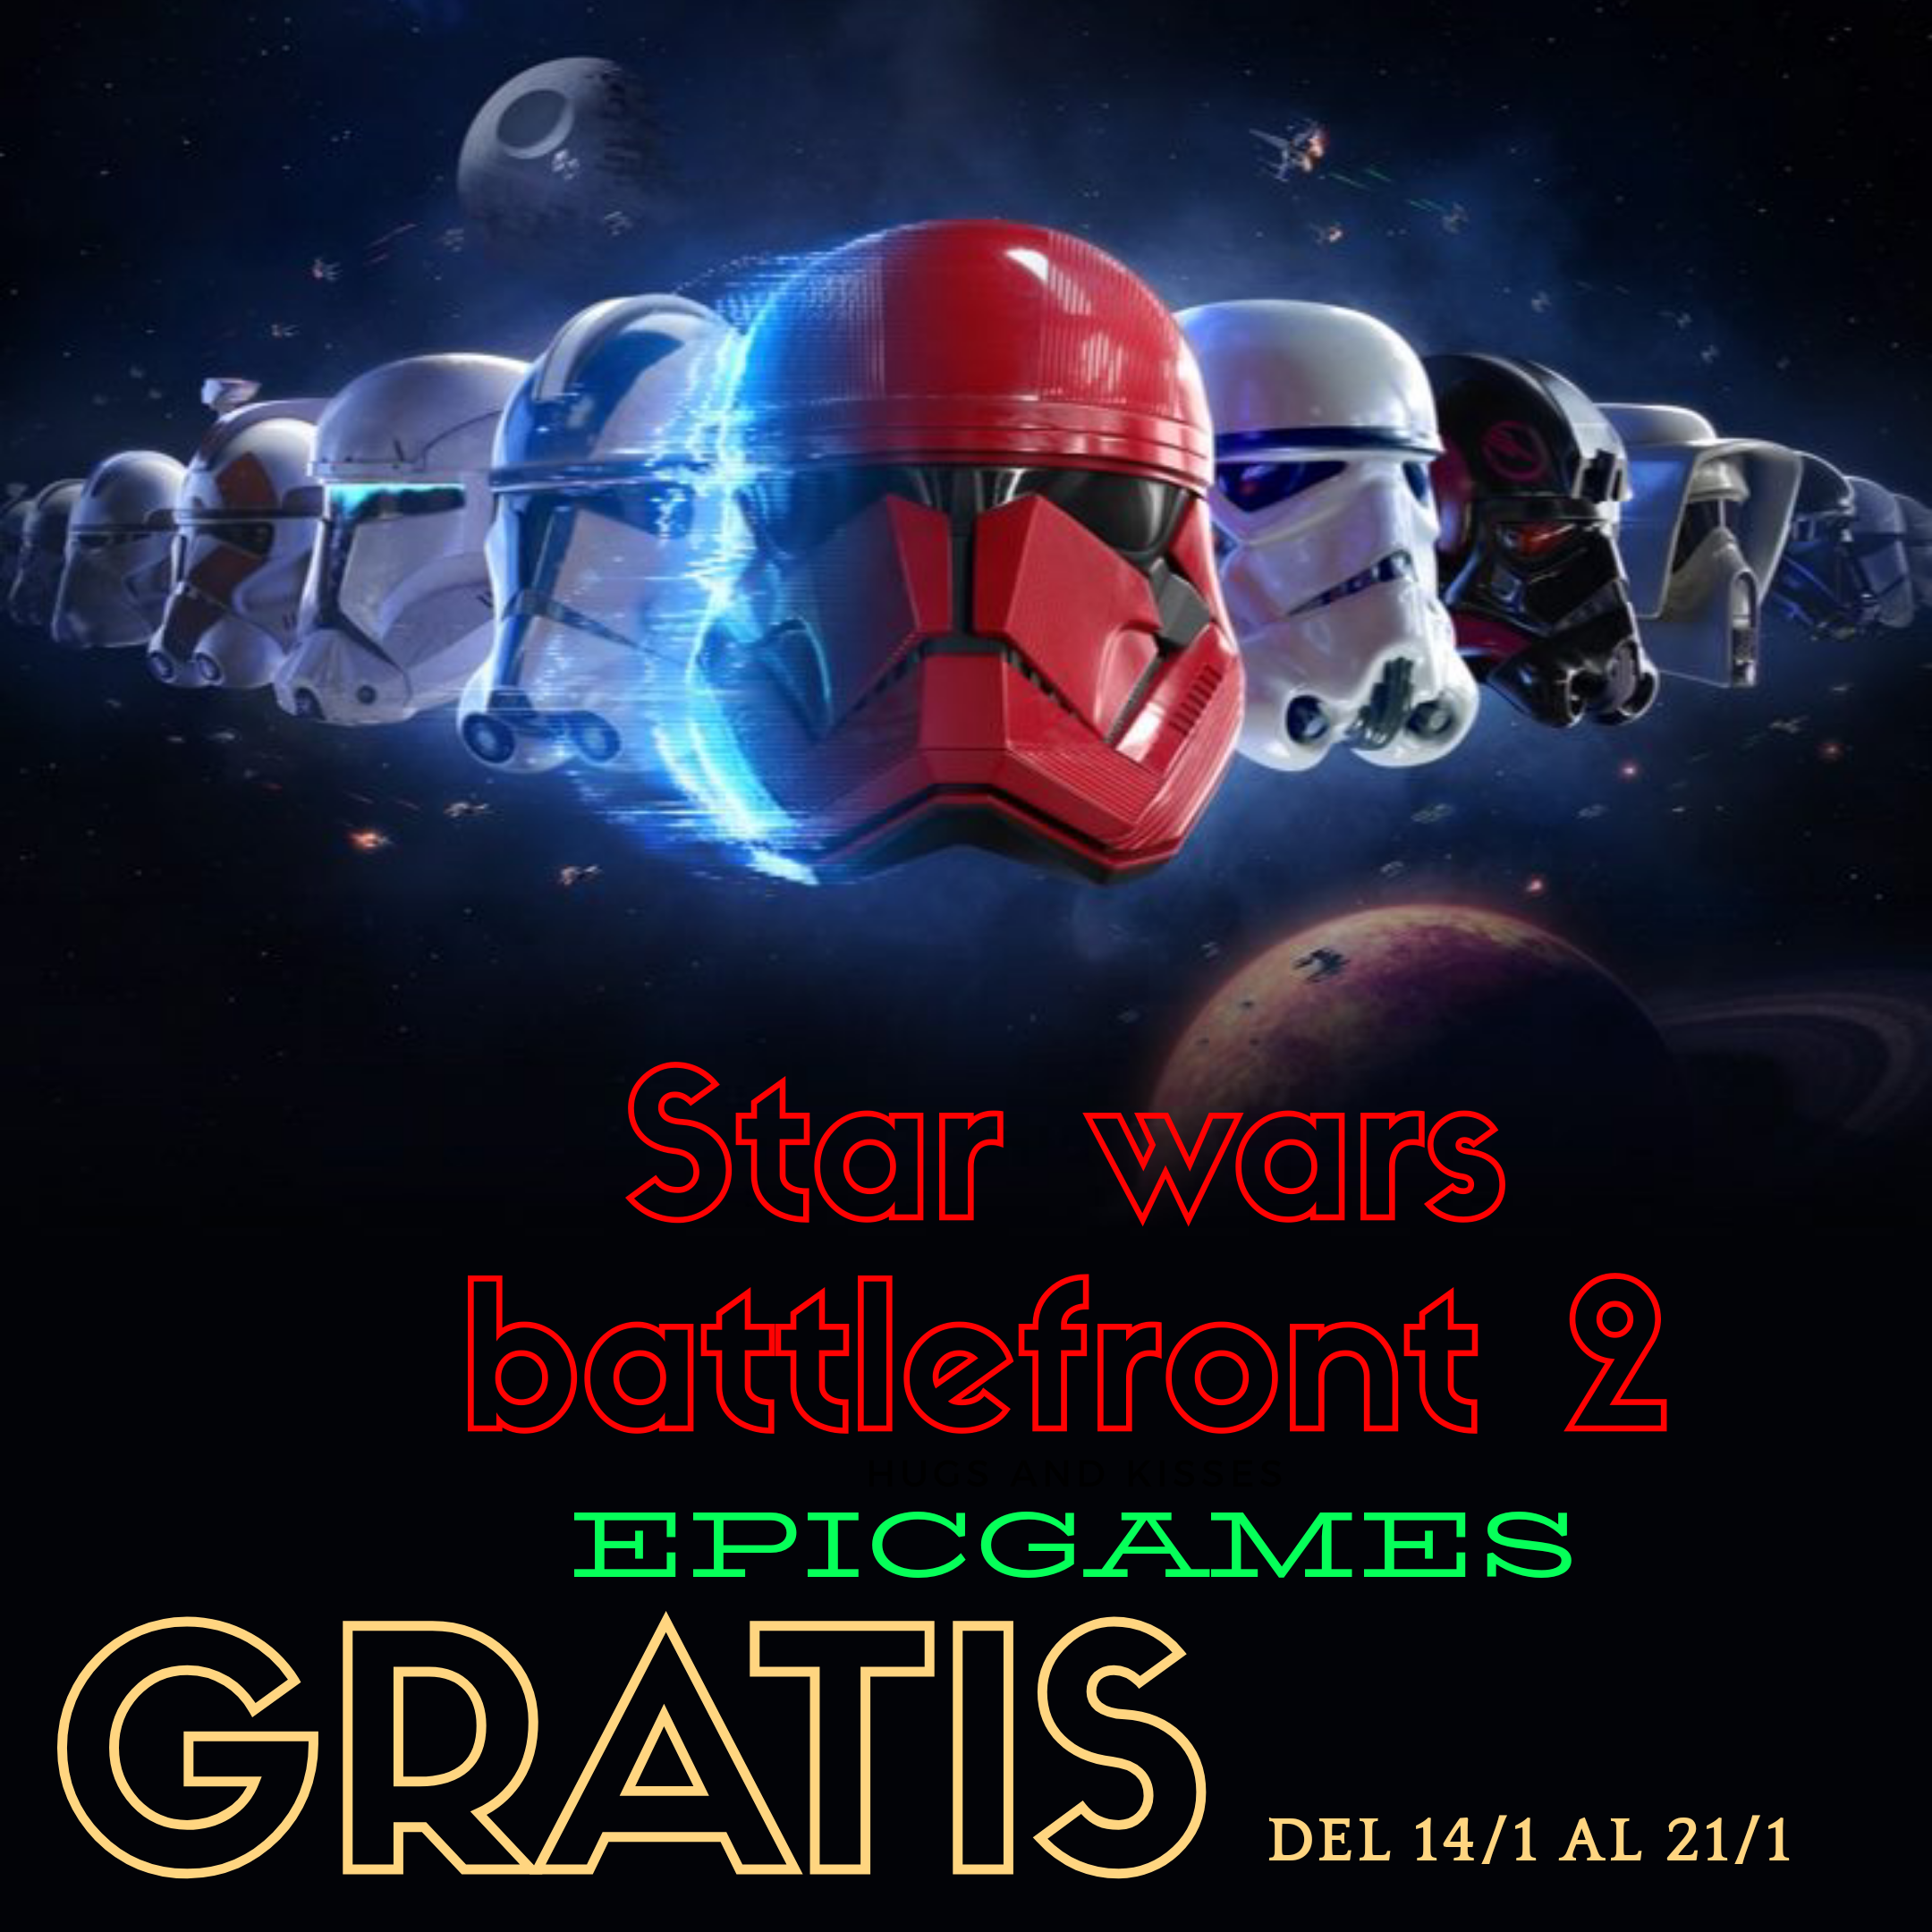 Epicgames regala Starwars Battlefront 2 del 14/1 al 21/1